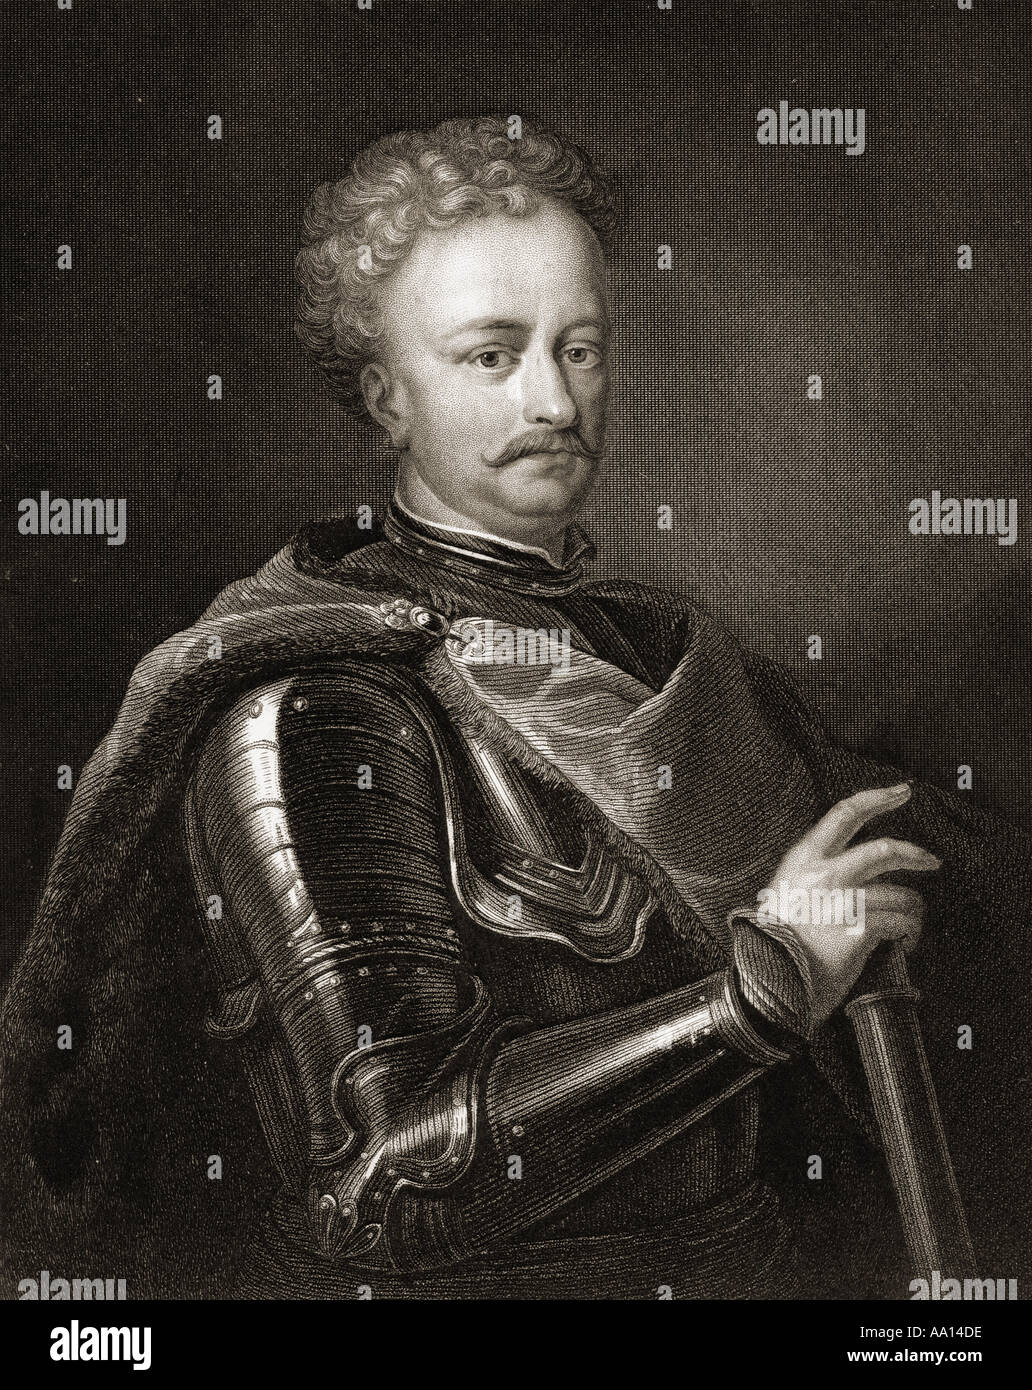 Jean III Sobieski, 1629 - 1696. Le Roi accompagné de la Pologne, 1674 - 1696 Banque D'Images